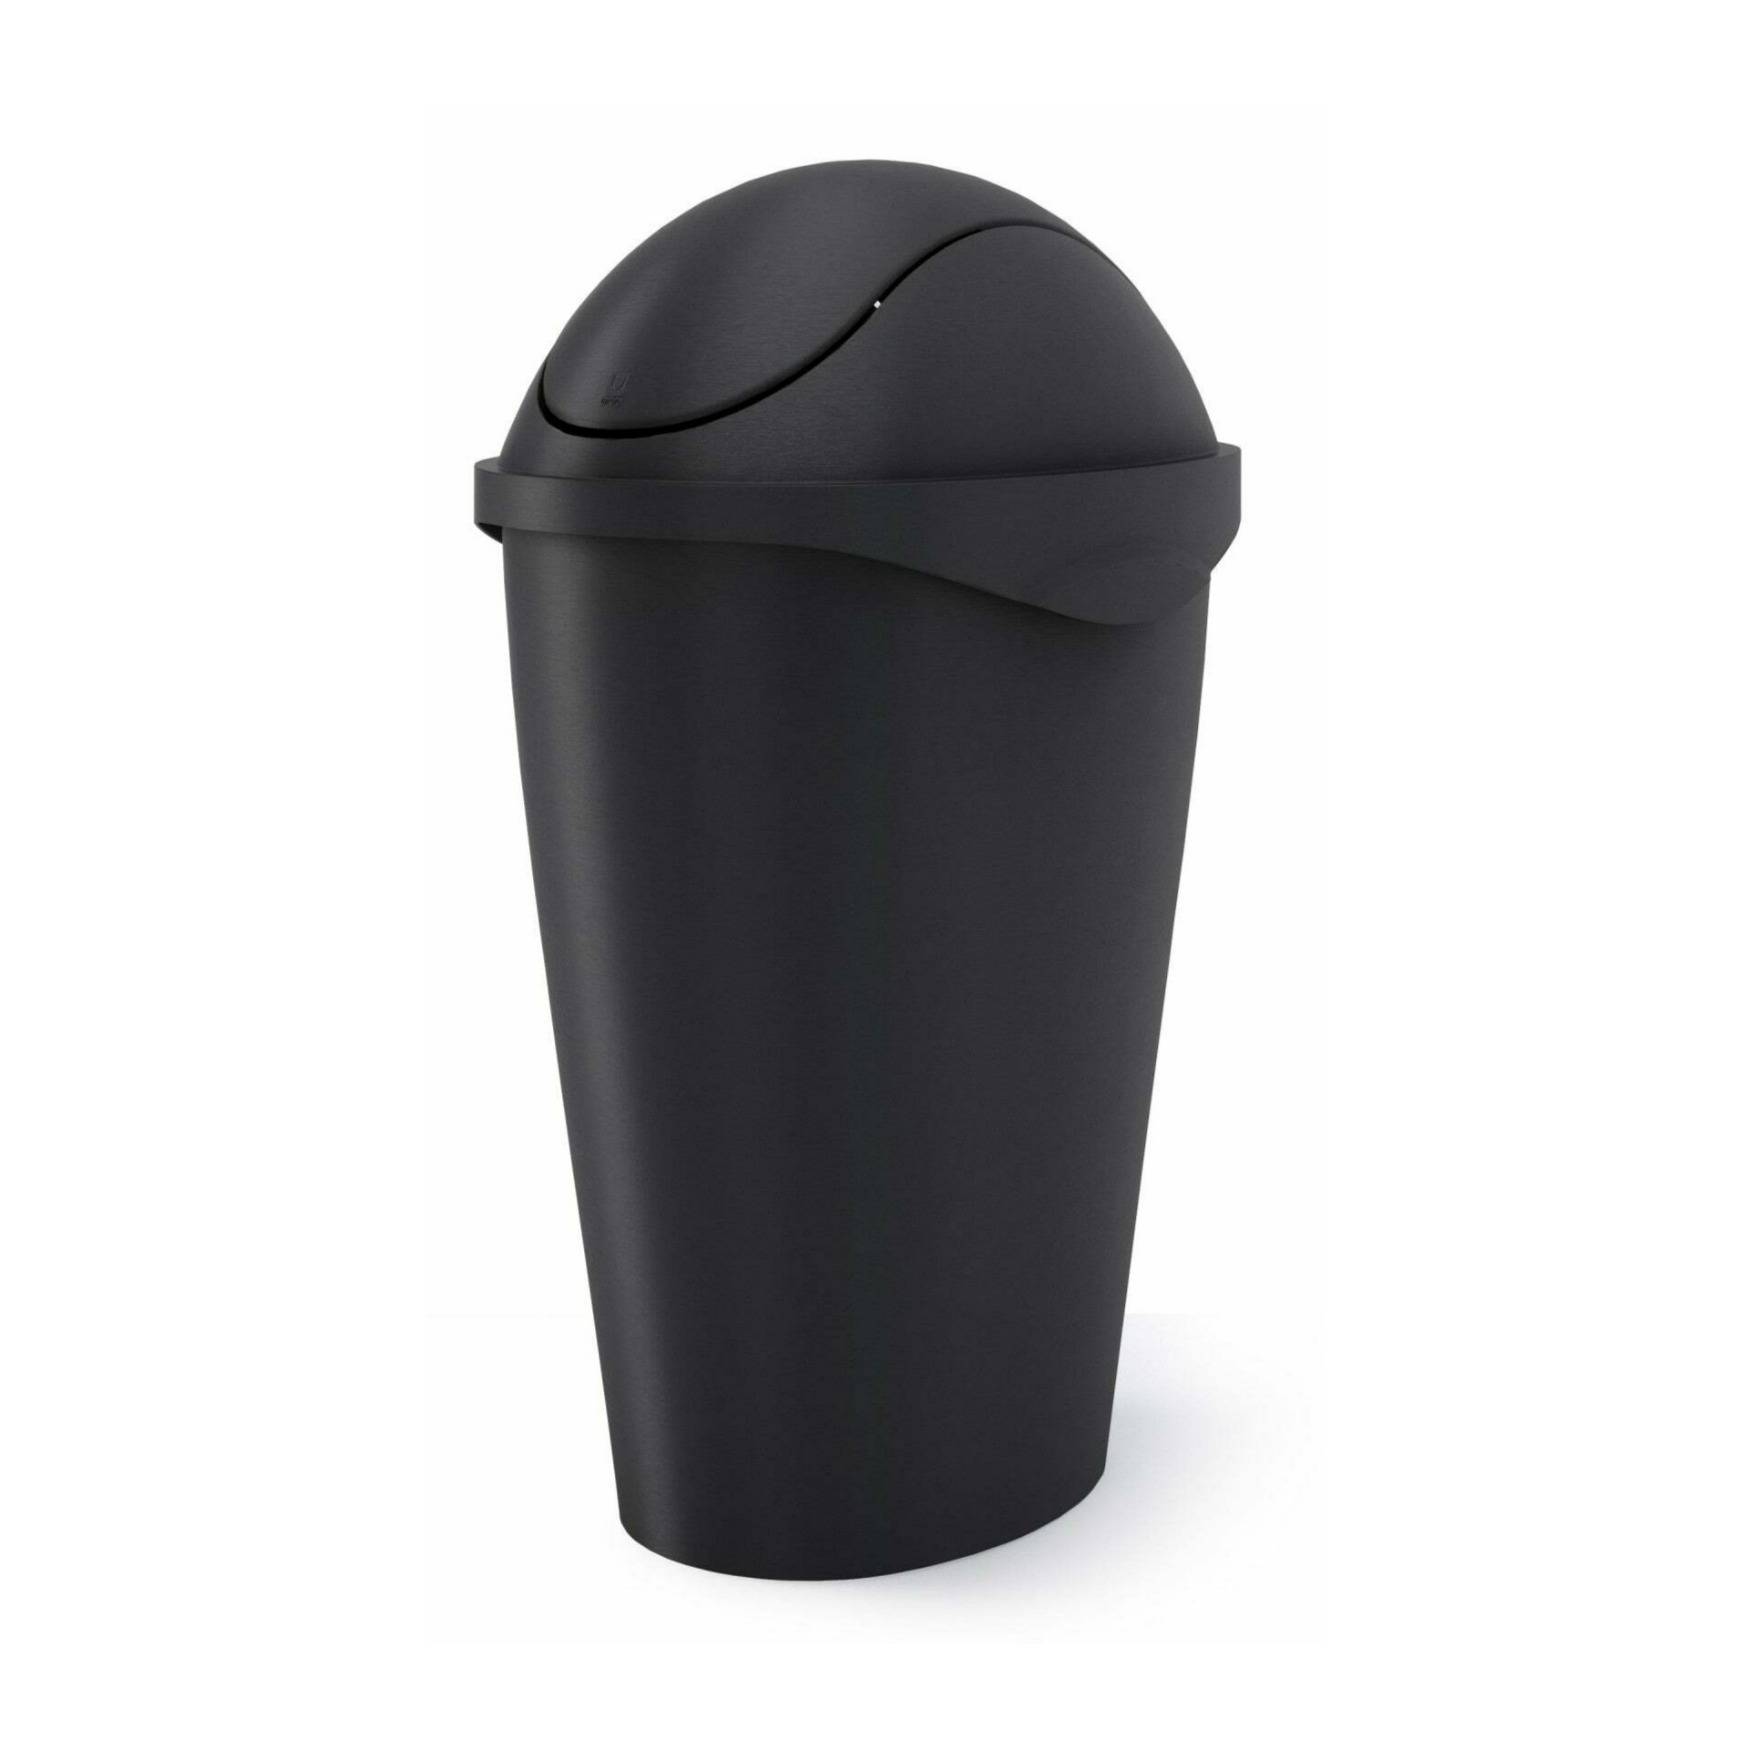 Umbra Swinger Trash Can (12-Gallon, Black)